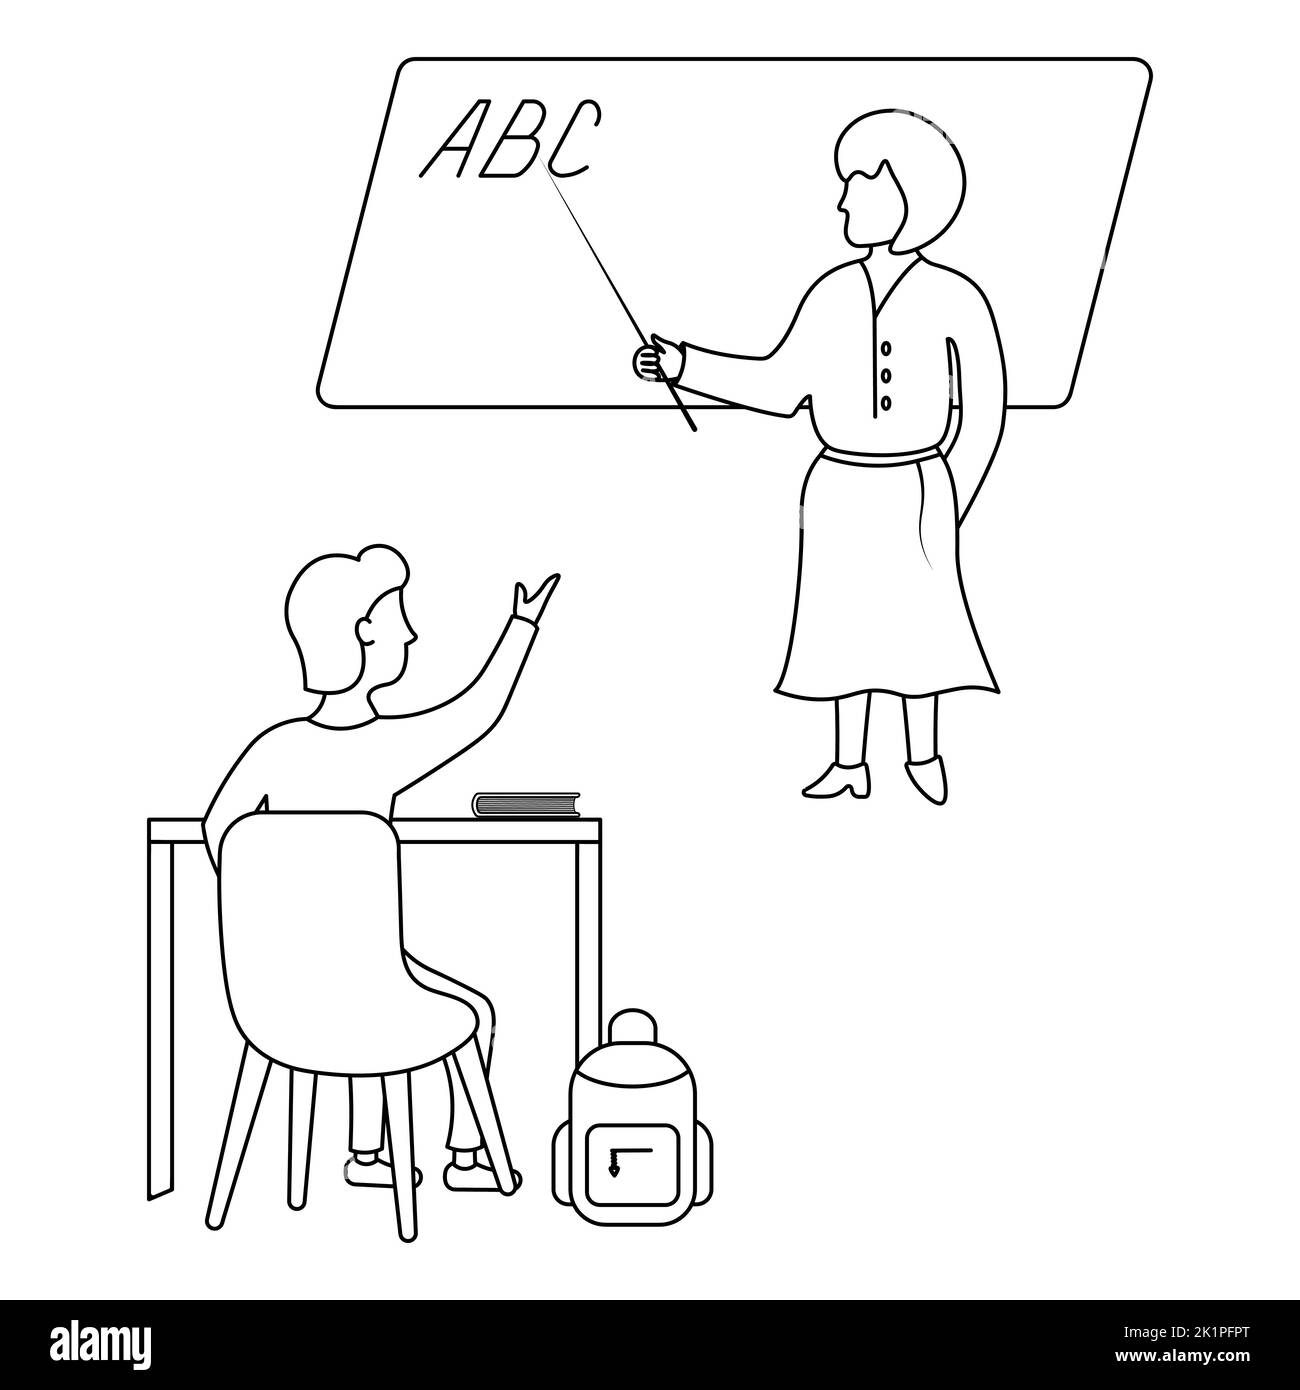 Un colegial levanta la mano para responder a la pregunta del maestro. Croquis. Una mujer señala con un puntero las letras ABC escritas en la pizarra. Ilustración del Vector